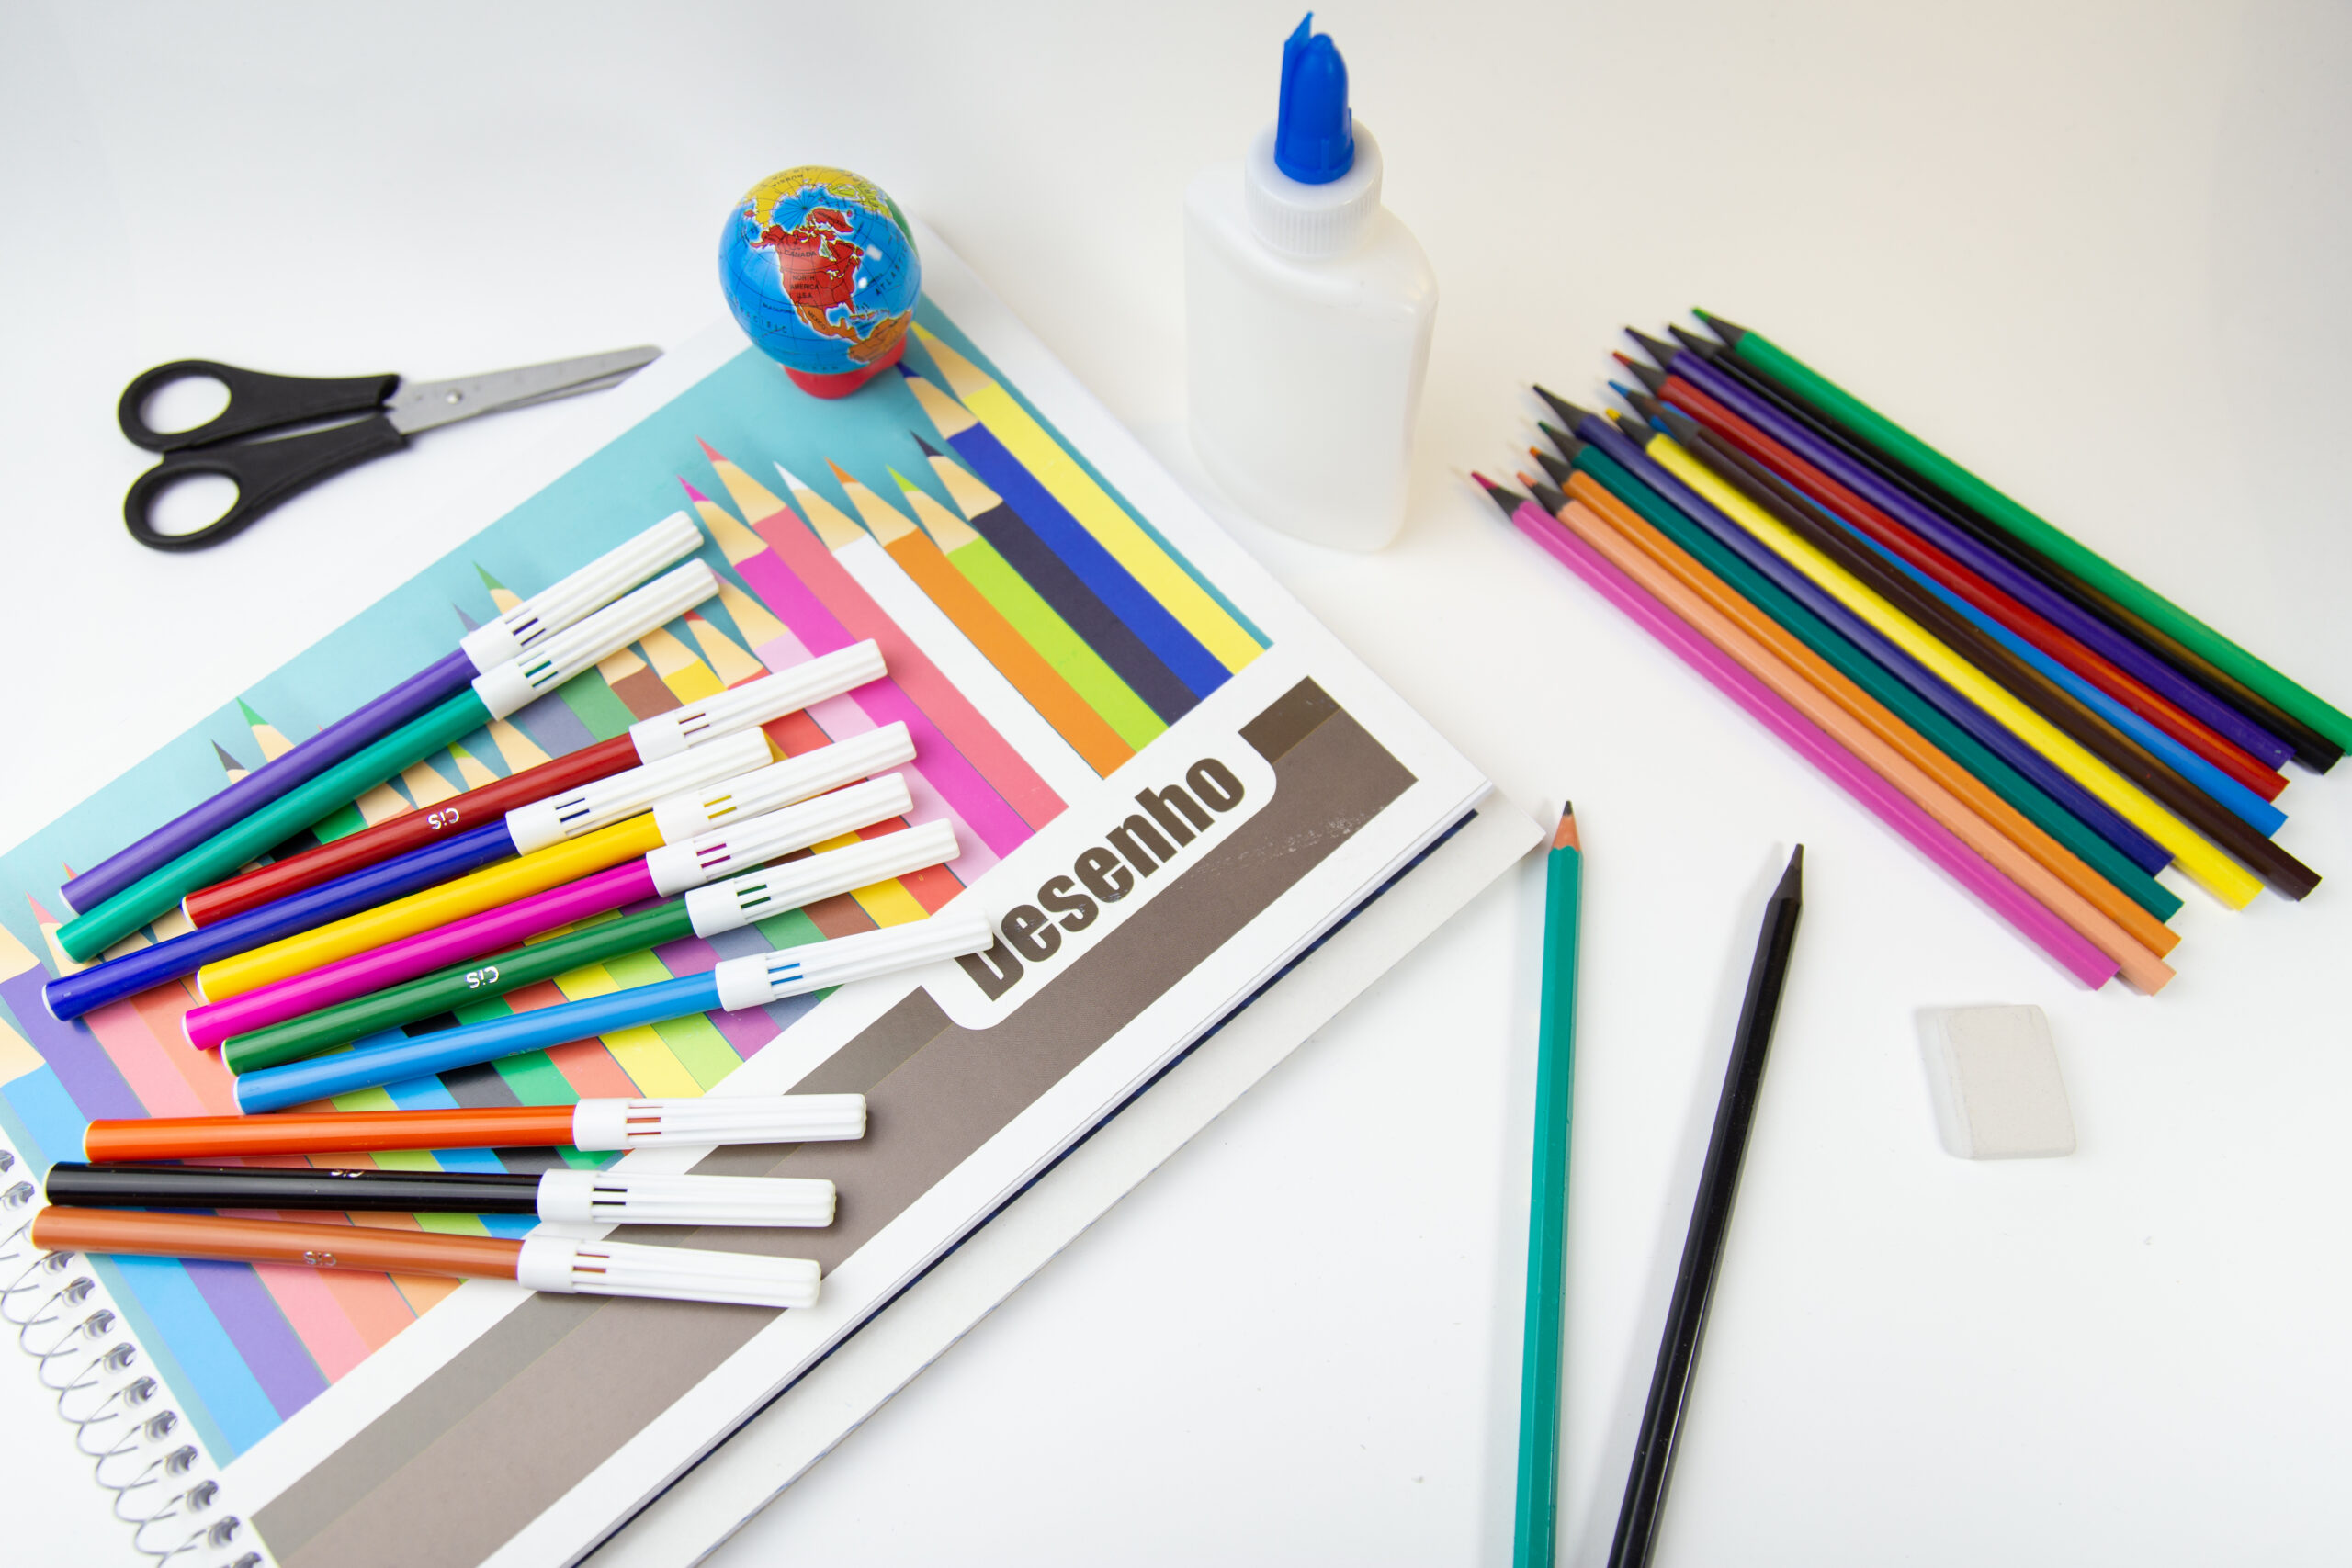 Sobre uma mesa branca, há canetinhas, lápis de cor, tesoura, cola e um caderno escrito desenho.